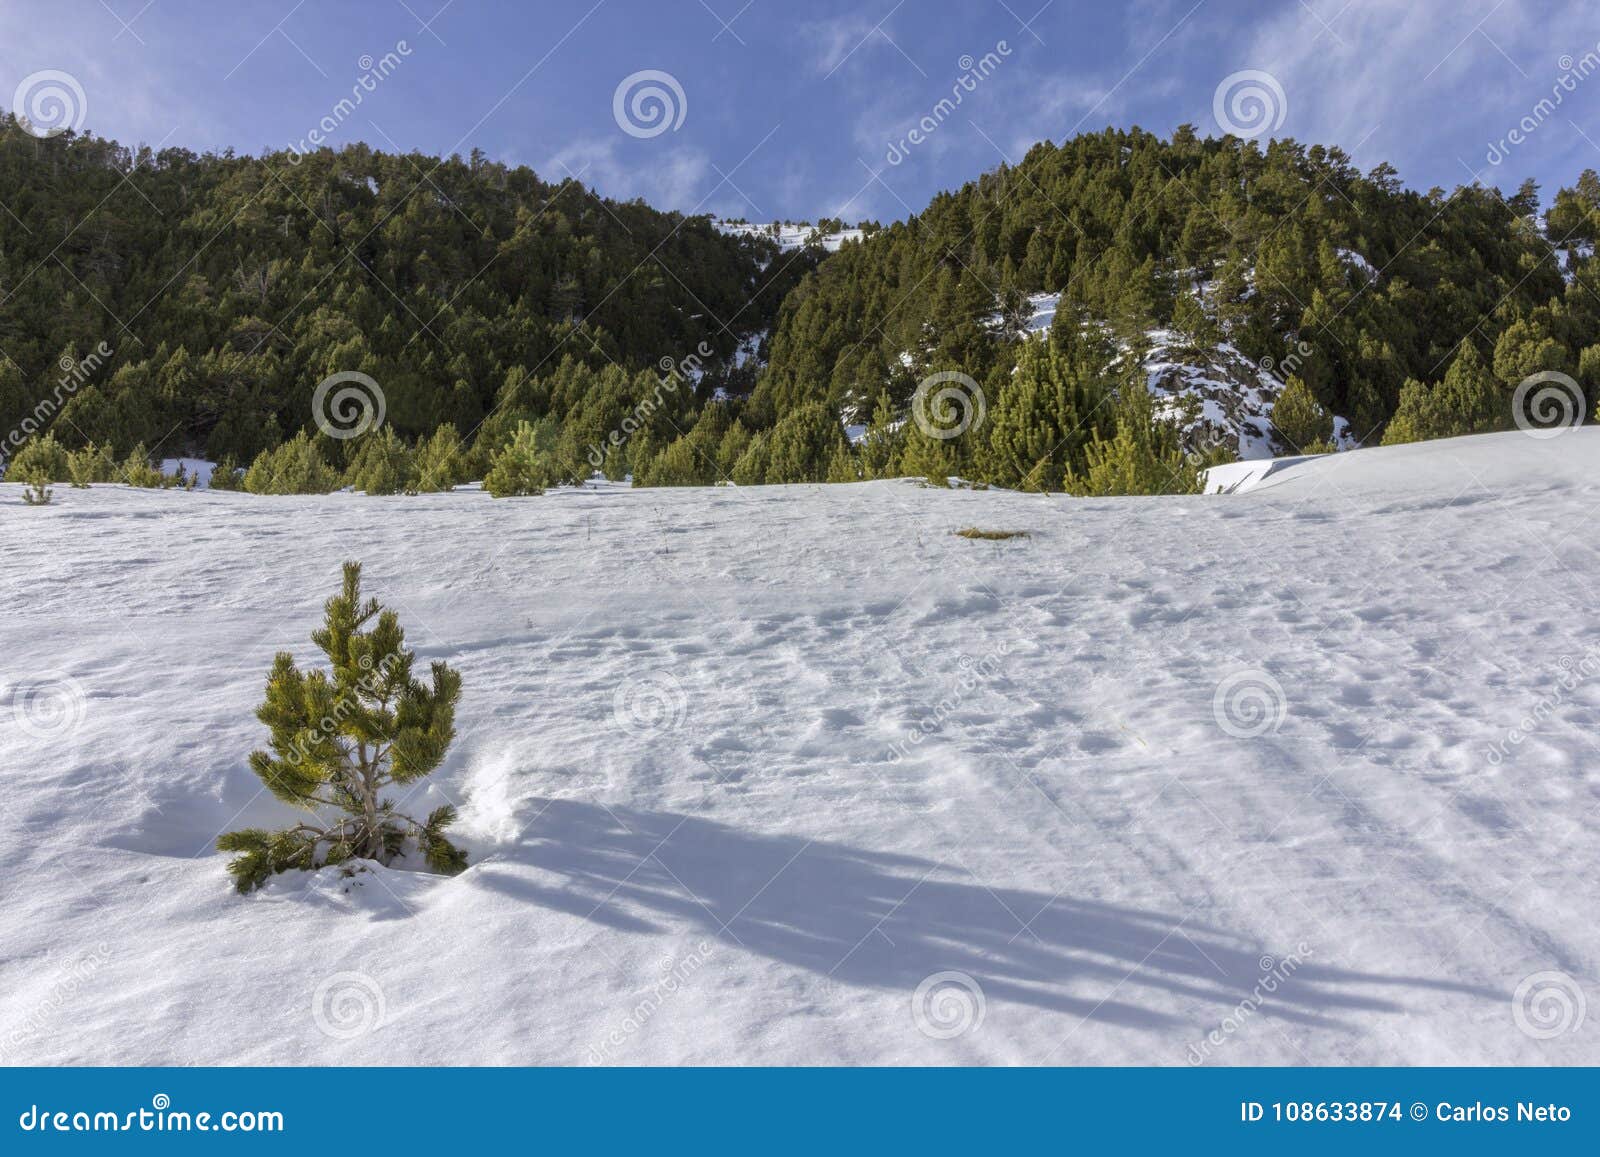 winter pyrenes landscape near roc del quer trekking trail, village of canillo.